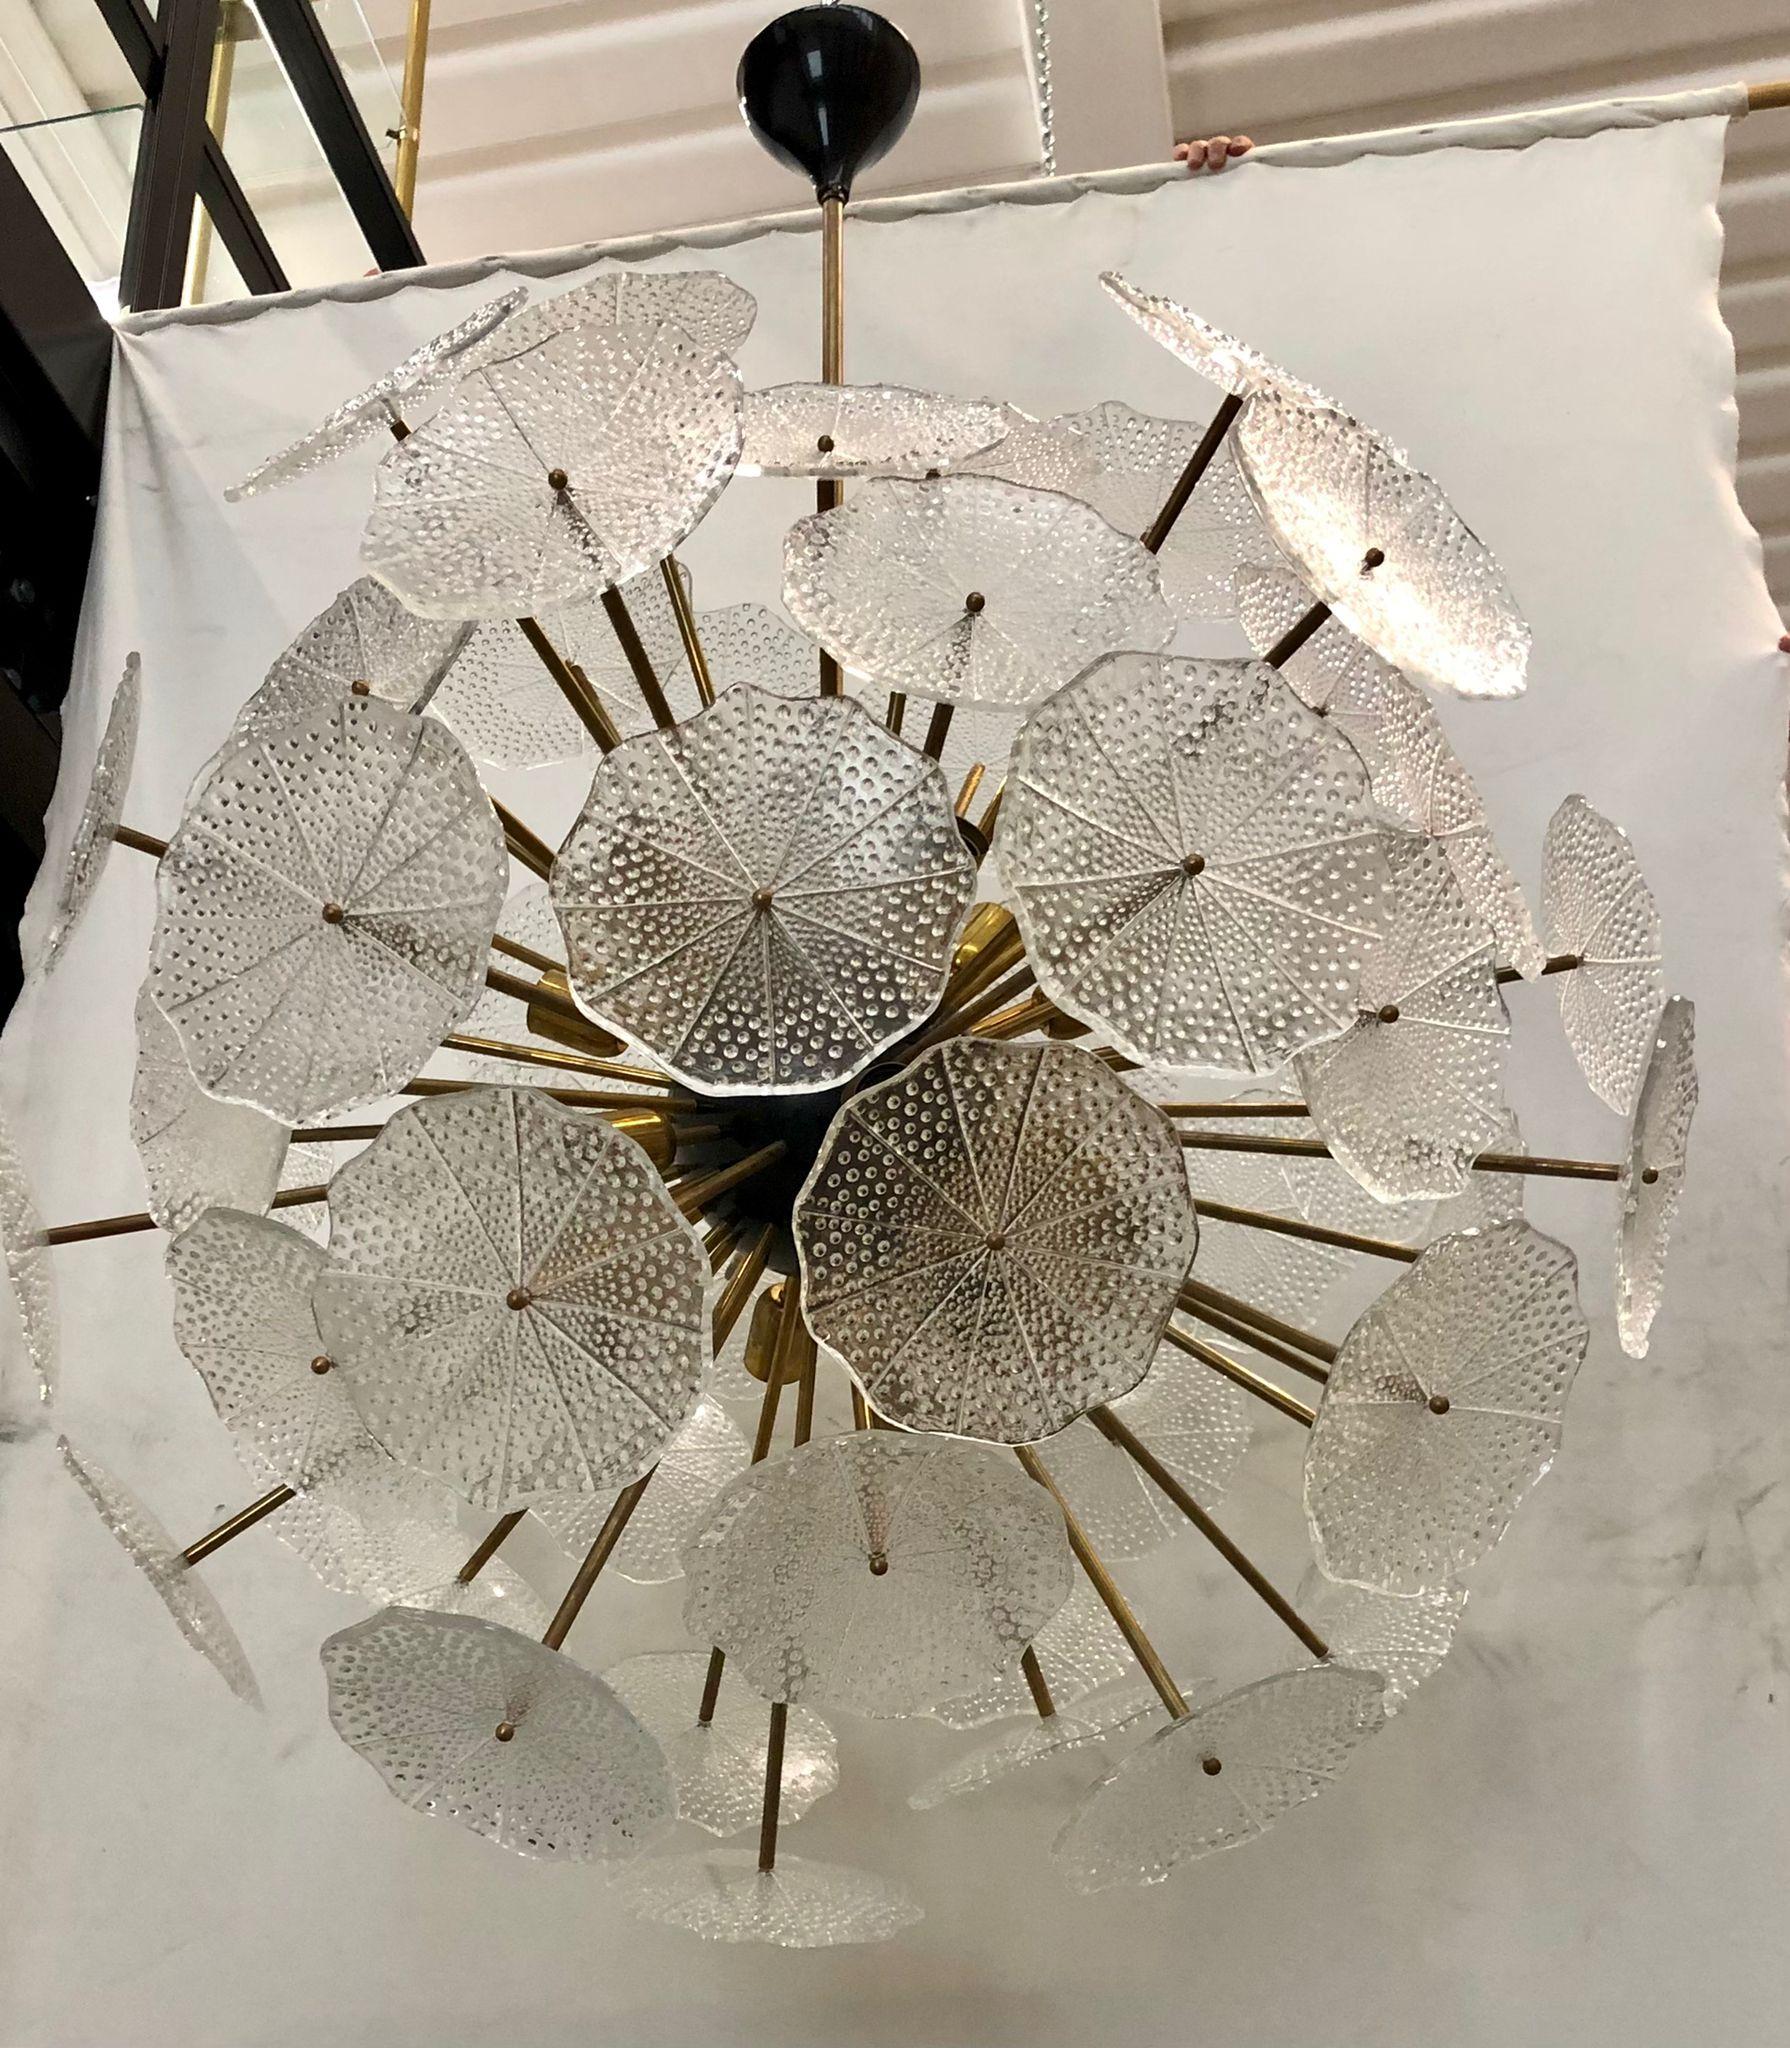 Les grandes fleurs en verre composent ce lustre Murano des années 1980. Un Sputnik classique du milieu du siècle.

Composé d'une grande sphère centrale dans laquelle sont vissées des tiges de laiton, des feuilles de verre sont placées au-dessus des